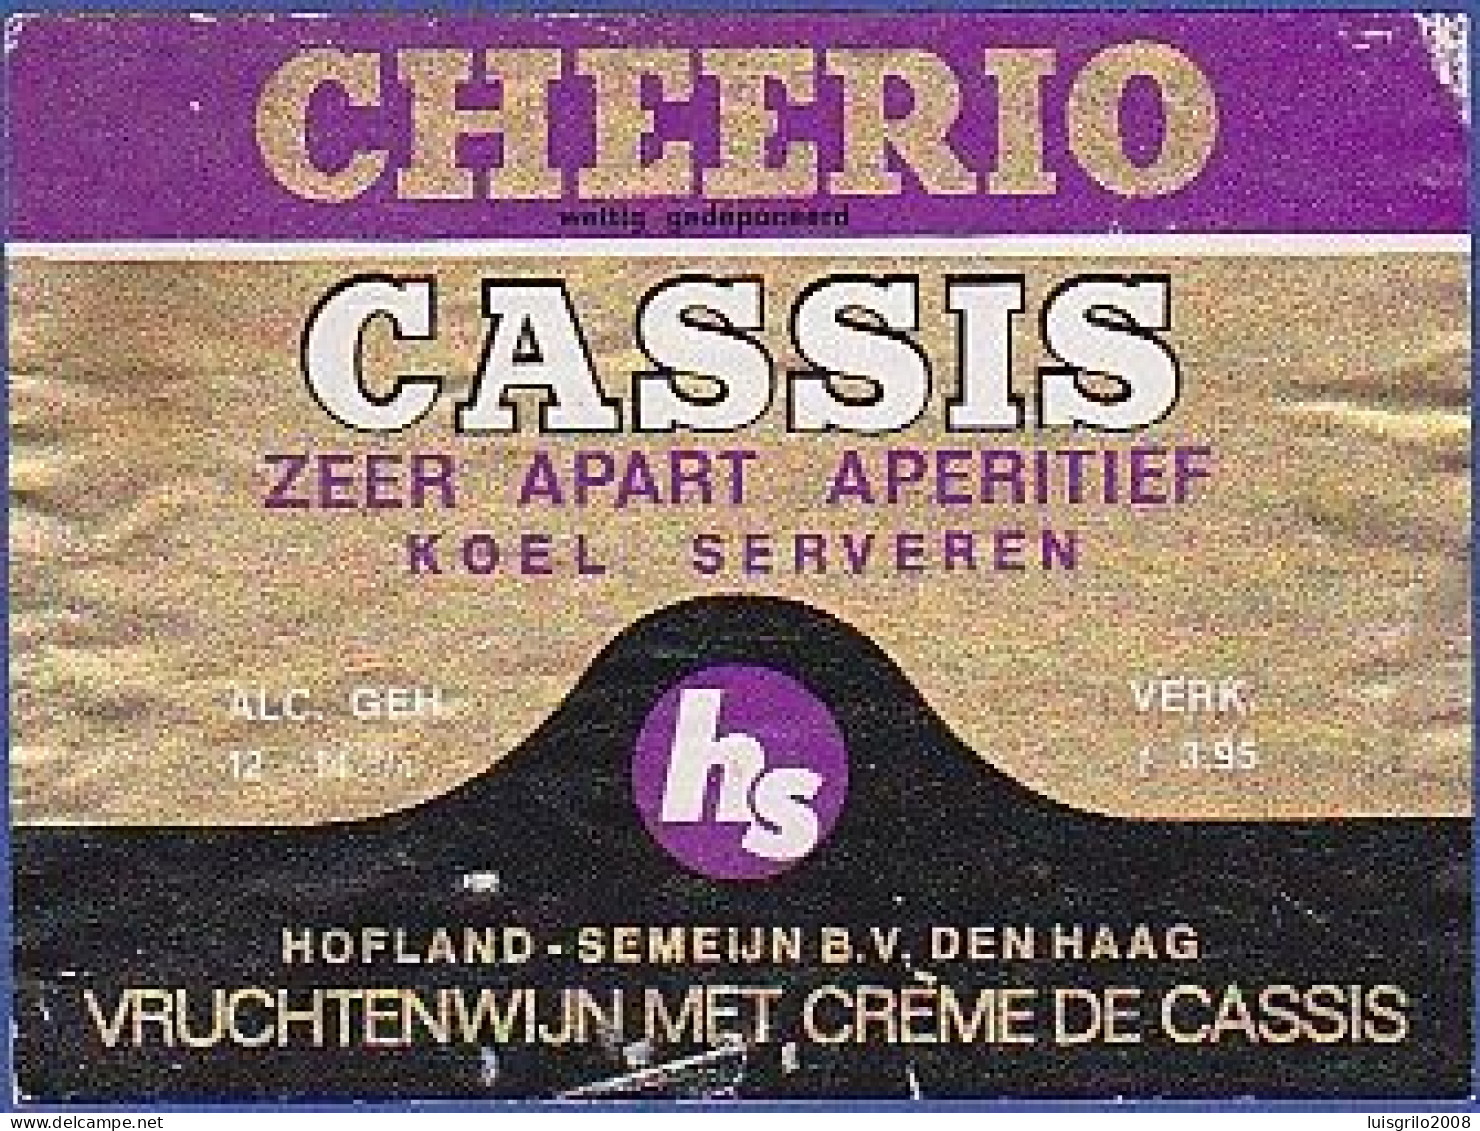 CHEERIO - CASSIS. Zeer Apart Aperitif. Koel Serveren -|- Vruchtenwijn Met Crème De Cassis - Alkohole & Spirituosen